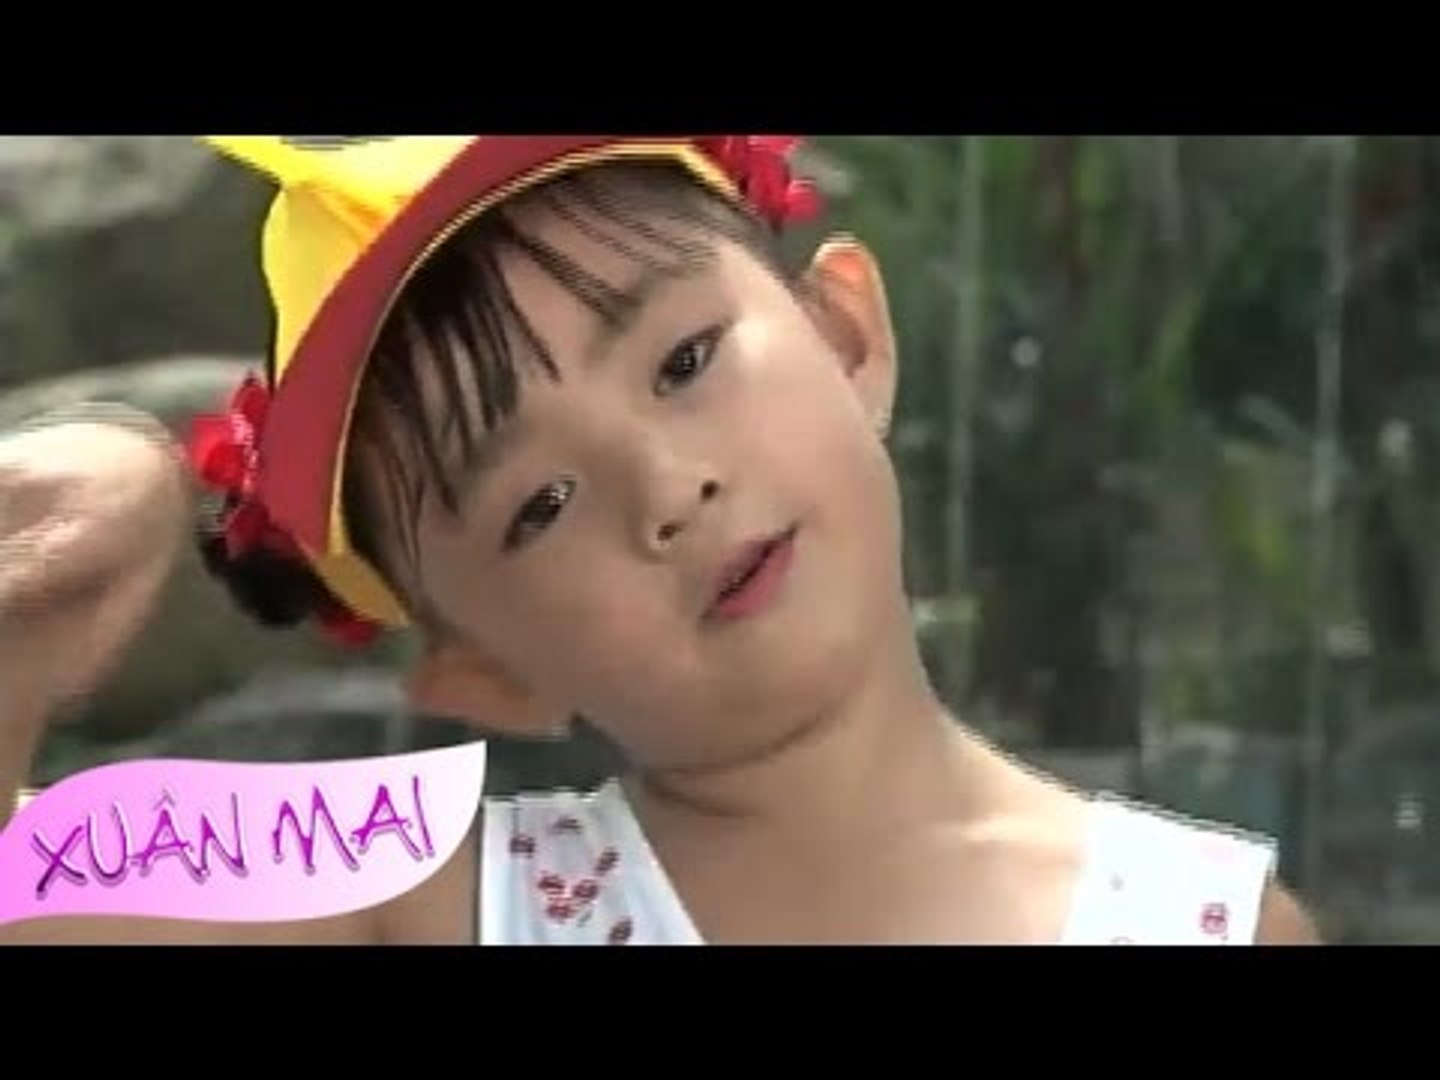 Vì Sao Chim Hay Hót - Xuân Mai [Official] - Video Dailymotion